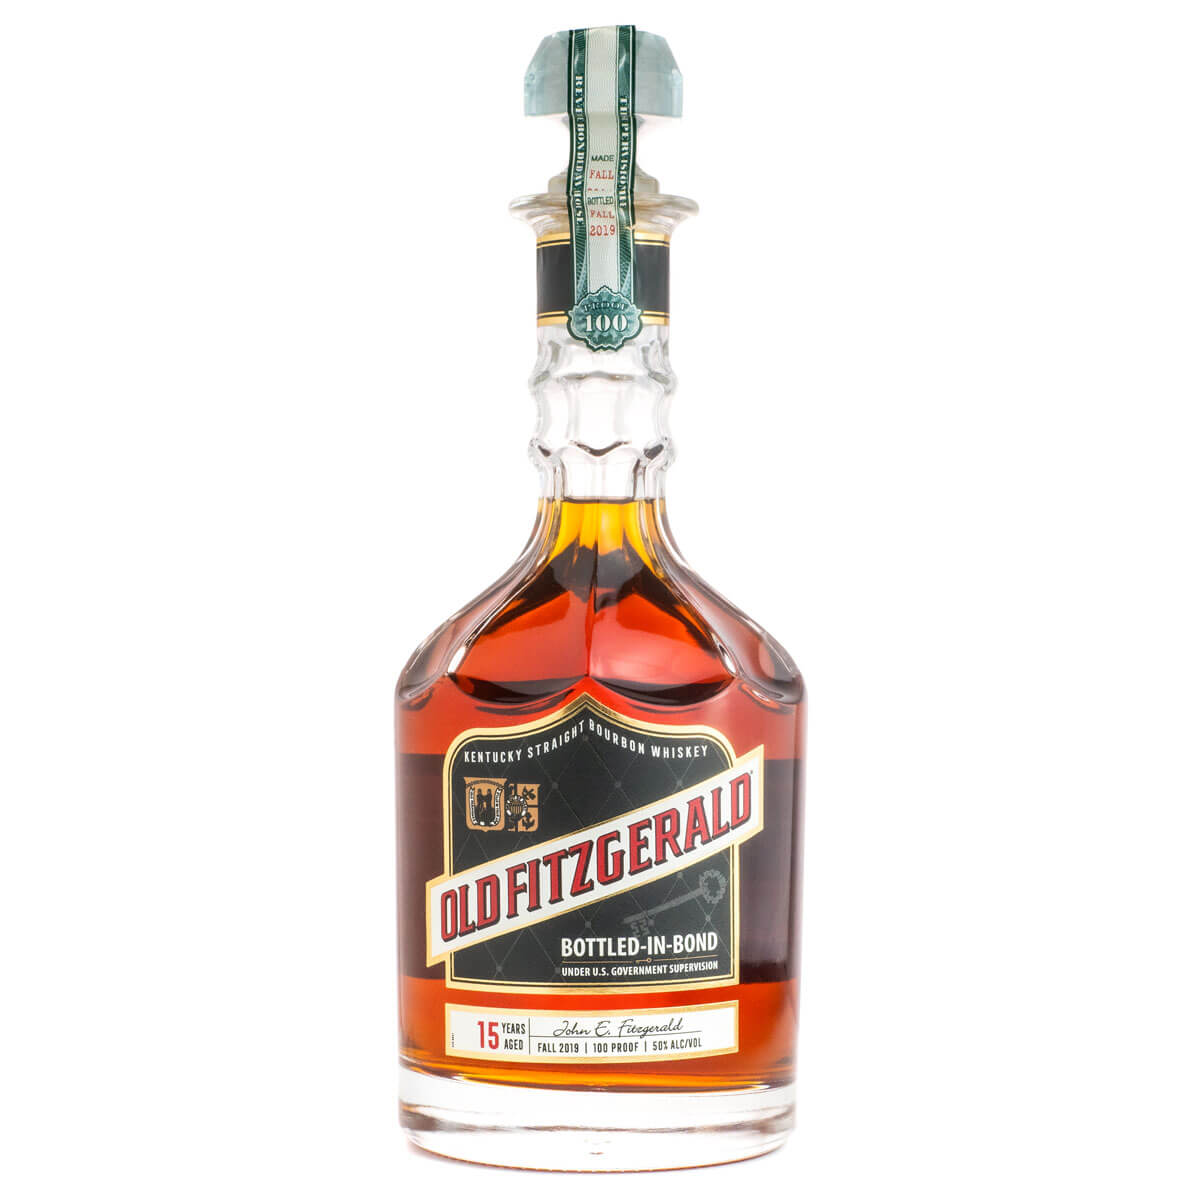 Old Fitzgerald Bottled-in-Bond bottle